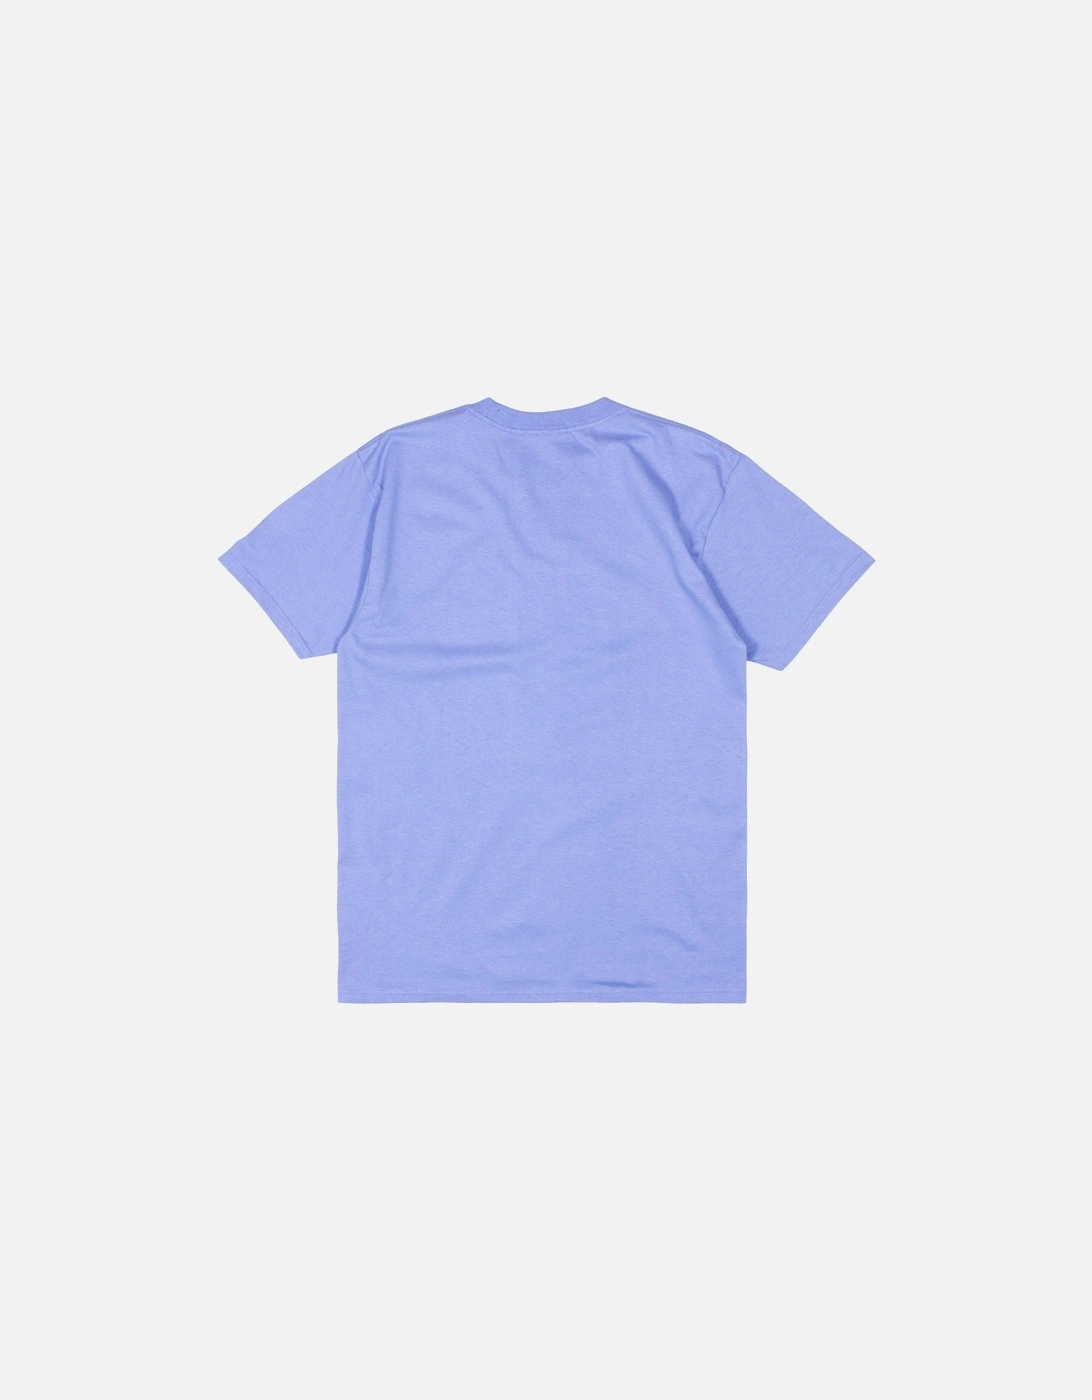 Lower Case 2 T-Shirt - Digital Violet